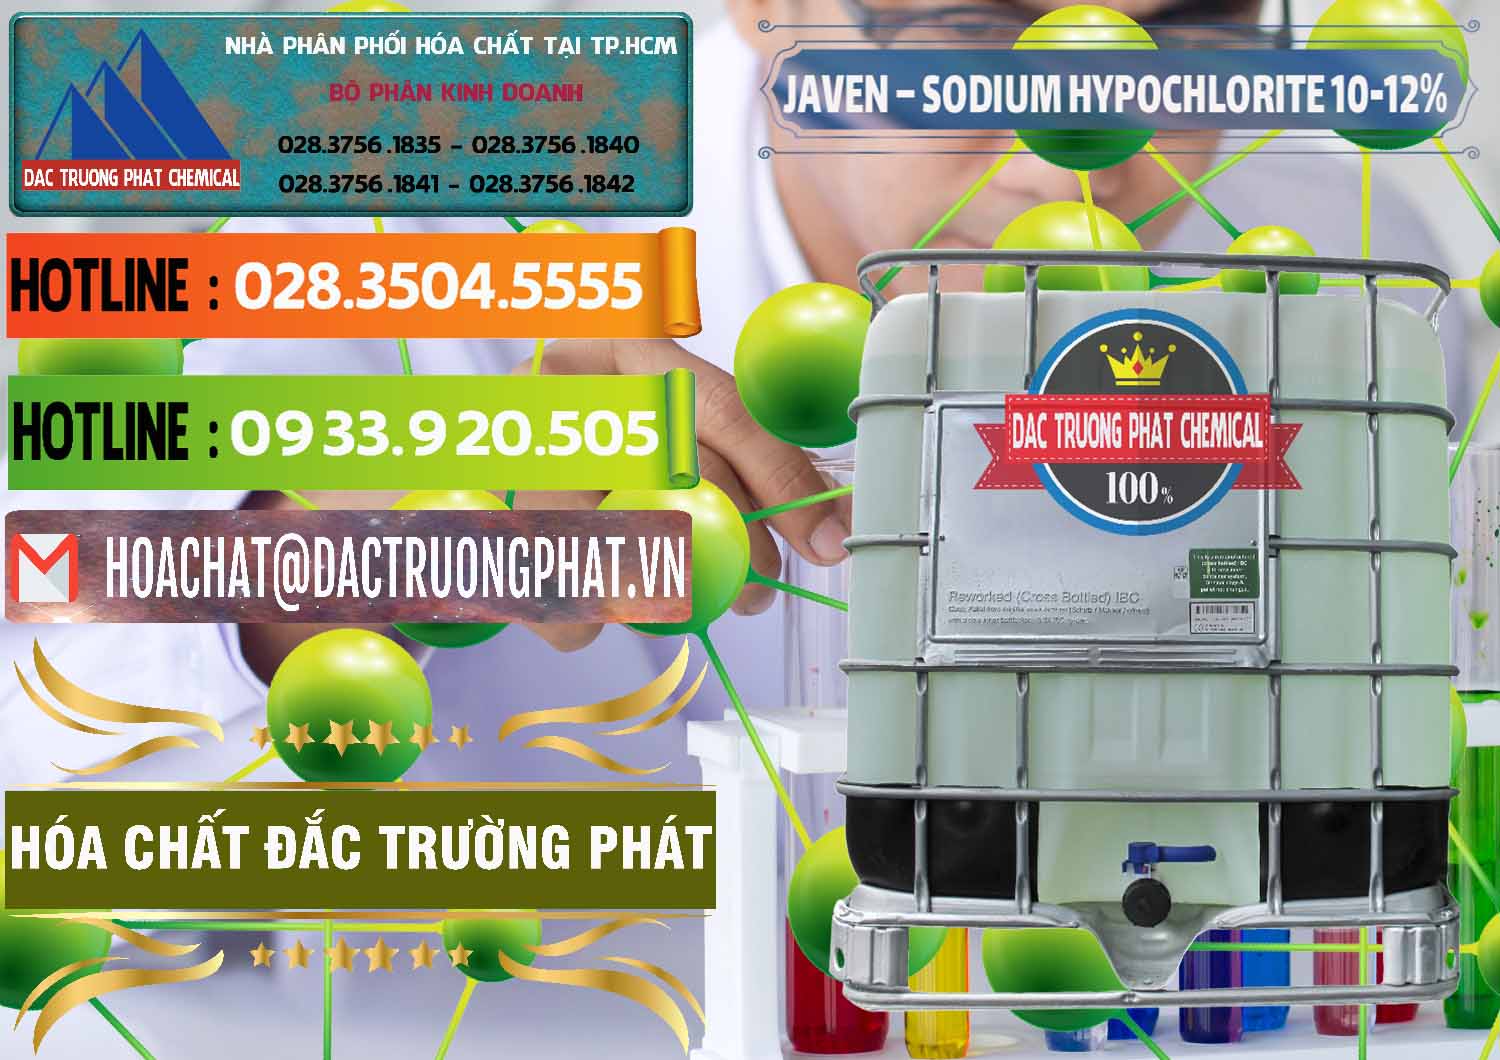 Cty chuyên kinh doanh _ phân phối Javen - Sodium Hypochlorite 10-12% Việt Nam - 0188 - Nơi chuyên bán & phân phối hóa chất tại TP.HCM - cungcaphoachat.com.vn